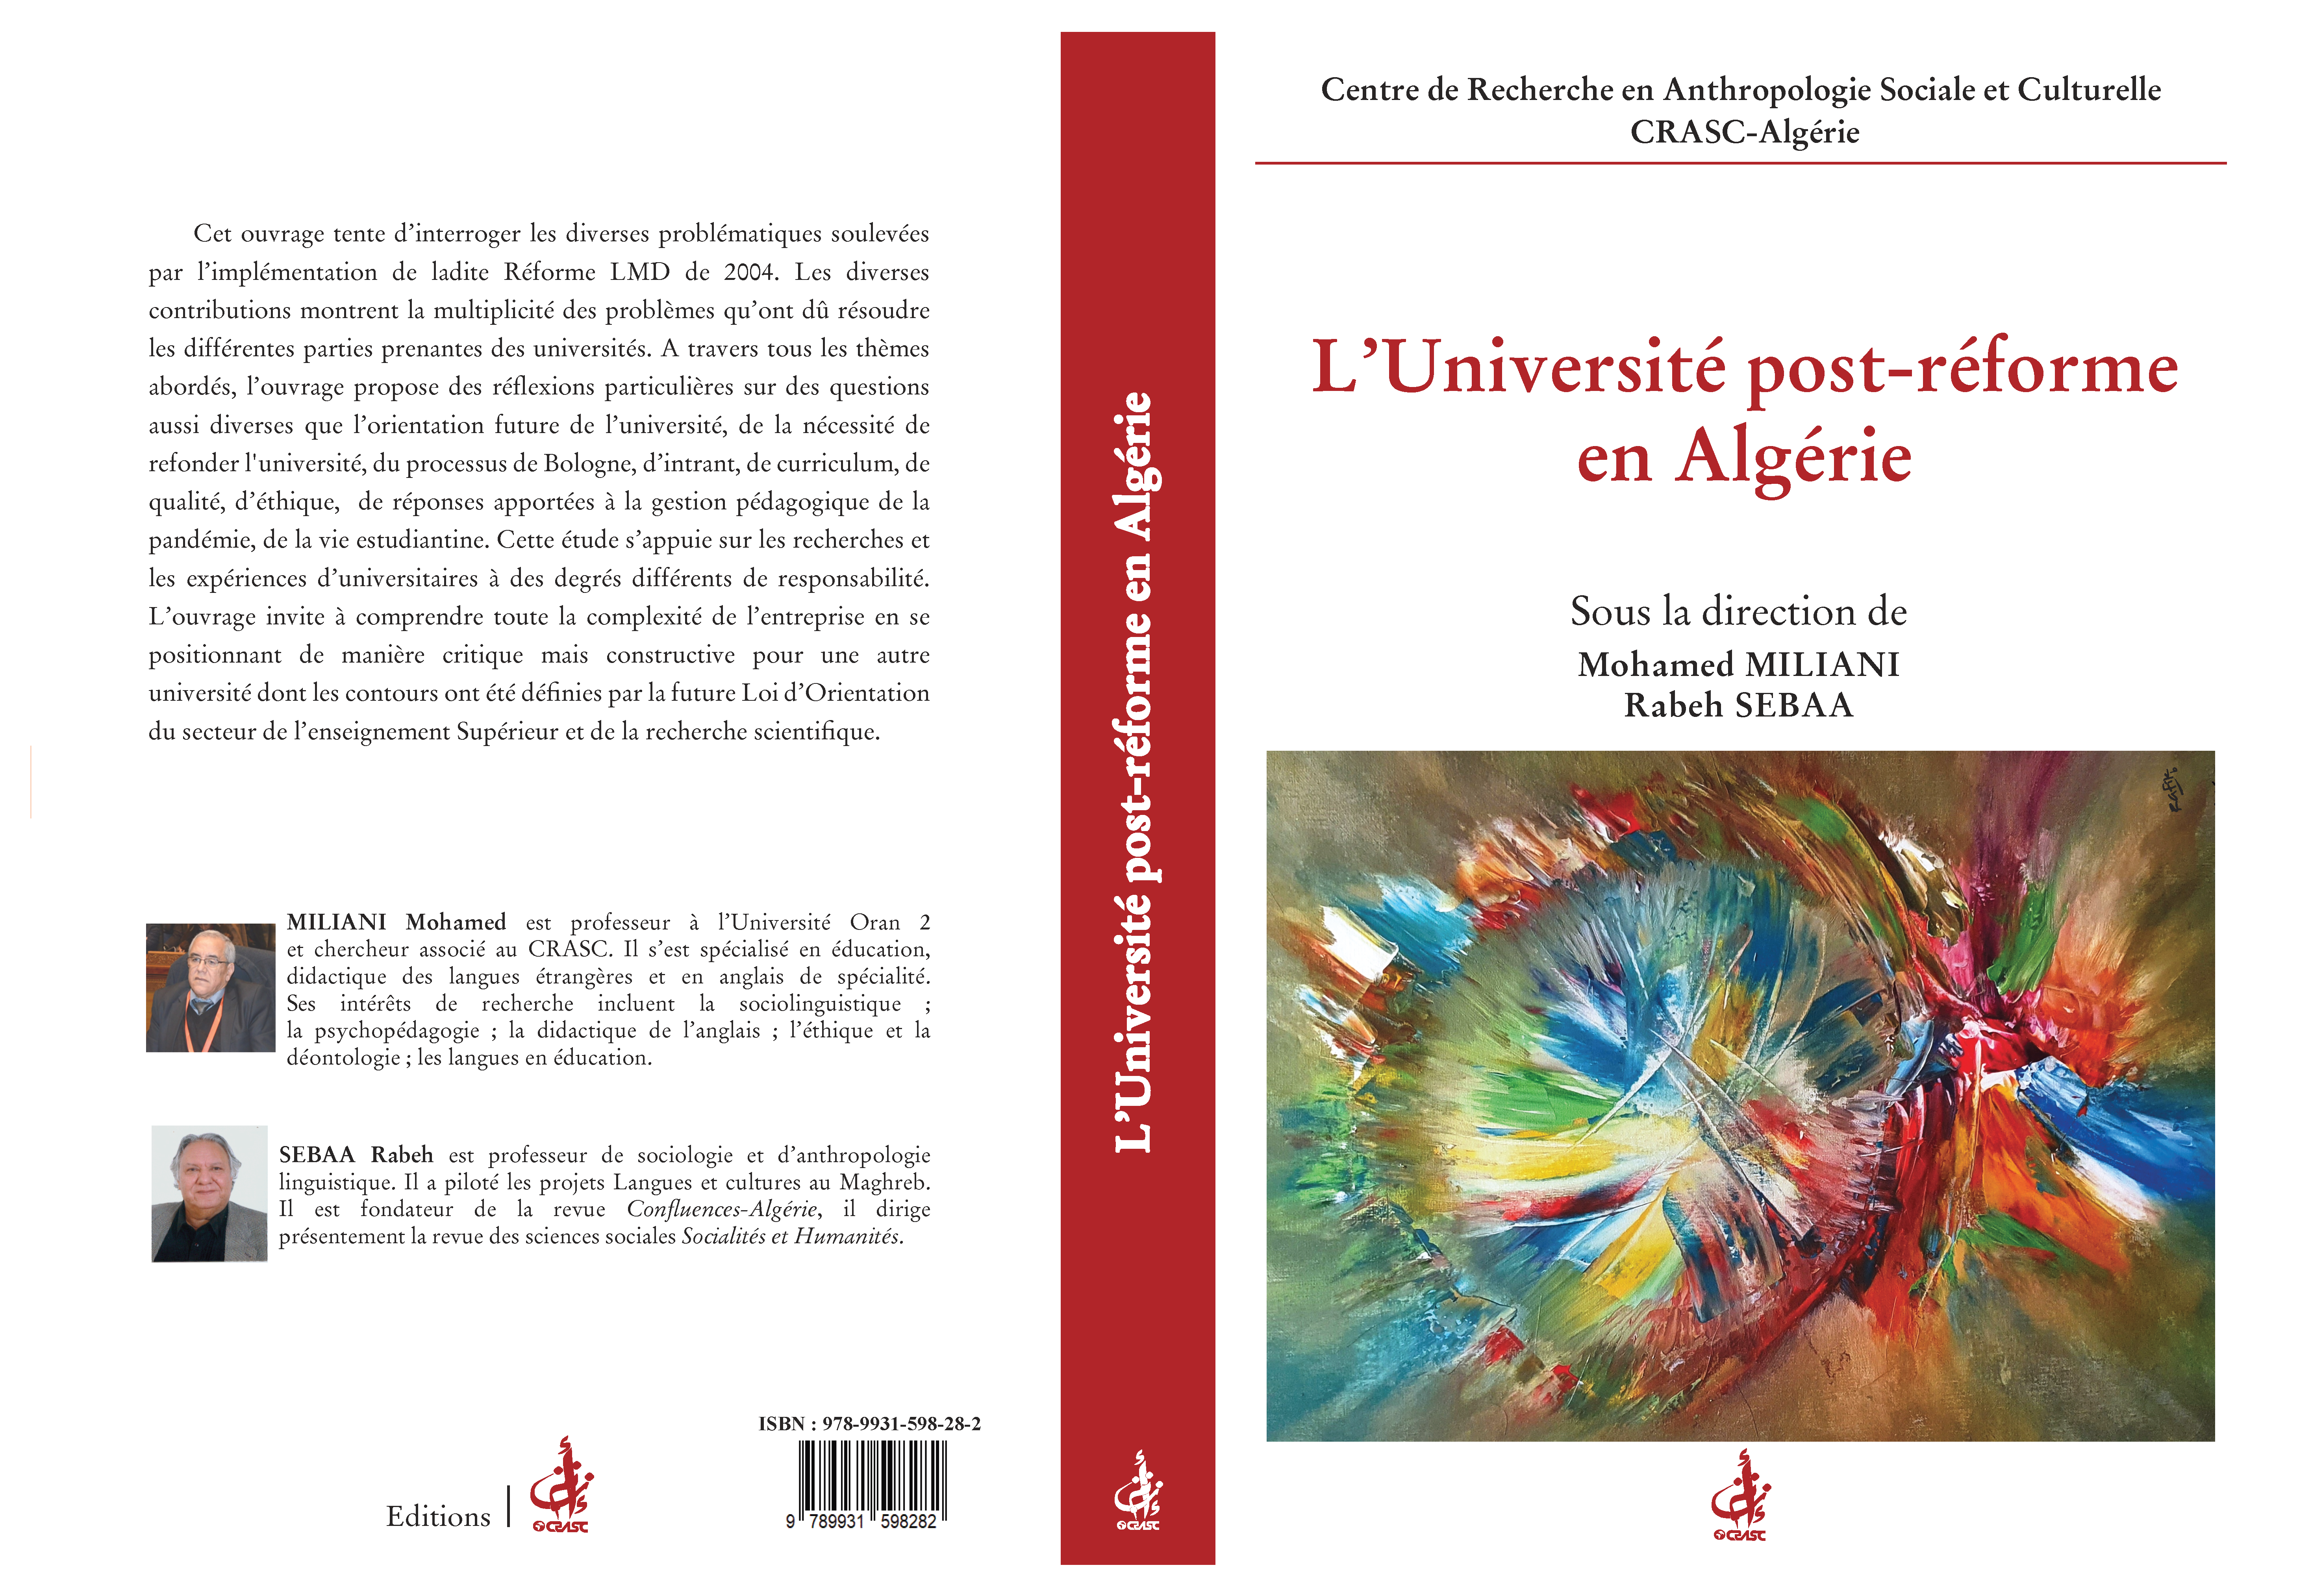 L'université post-réforme en Algérie